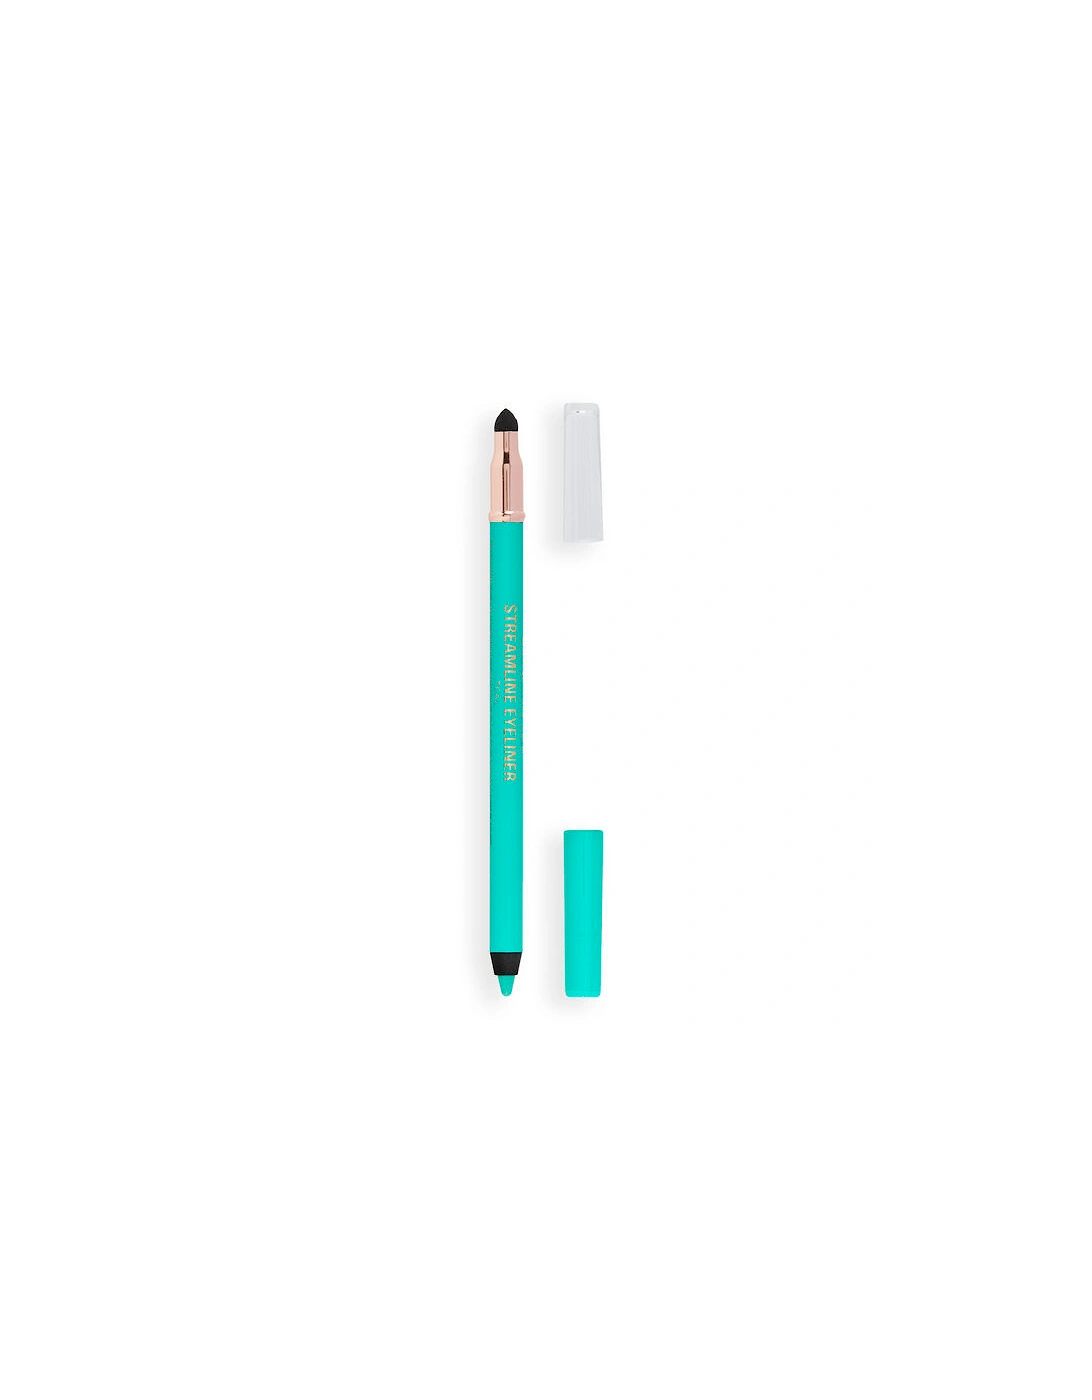 Makeup Streamline Waterline Eyeliner Pencil Teal, 2 of 1